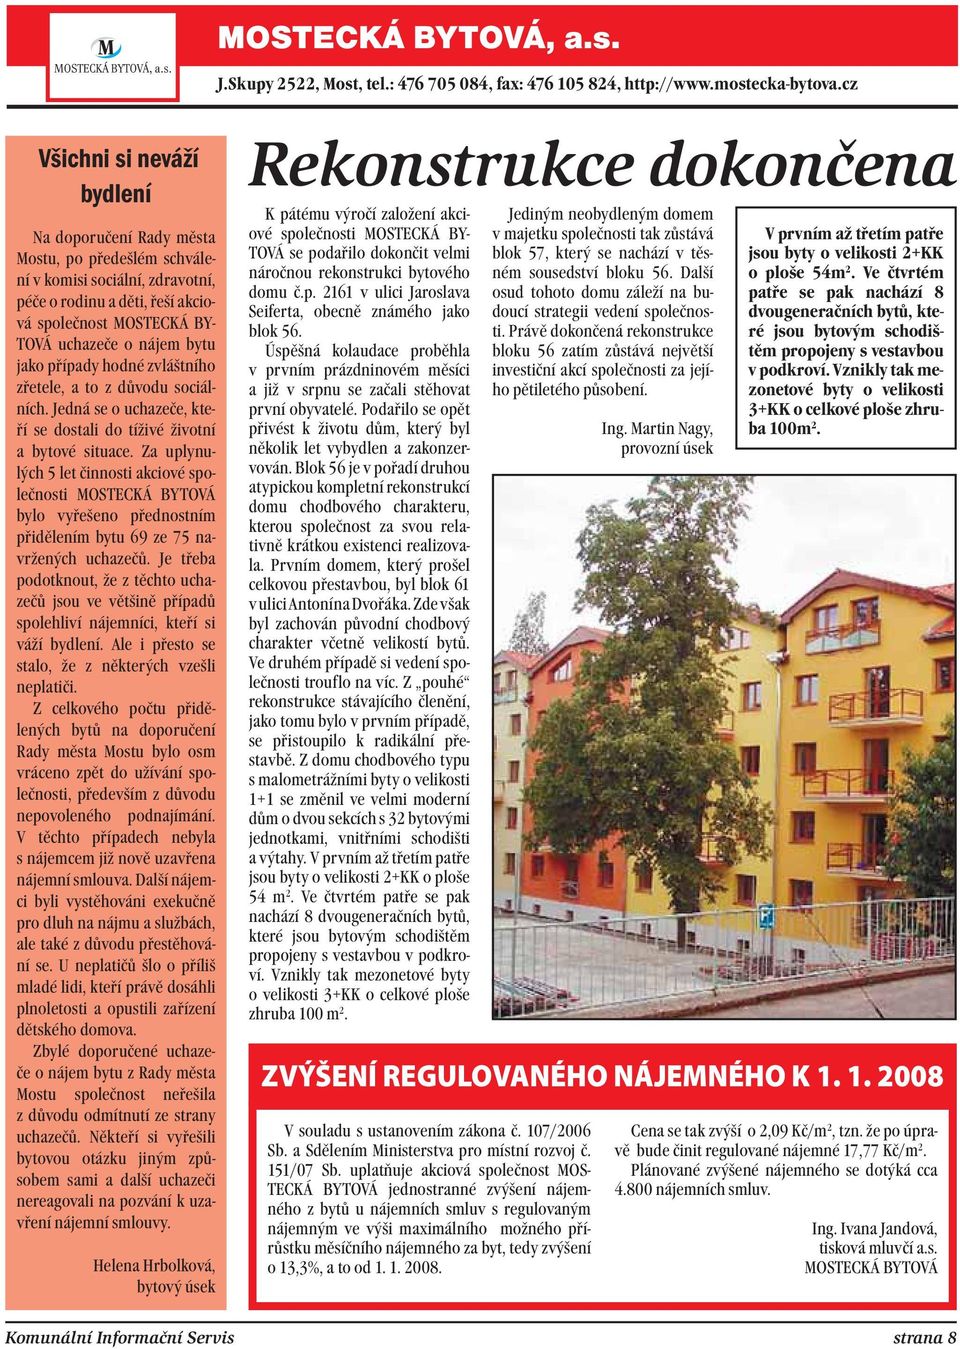 Za uplynulých 5 let činnosti akciové společnosti MOSTECKÁ BYTOVÁ bylo vyřešeno přednostním přidělením bytu 69 ze 75 navržených uchazečů.